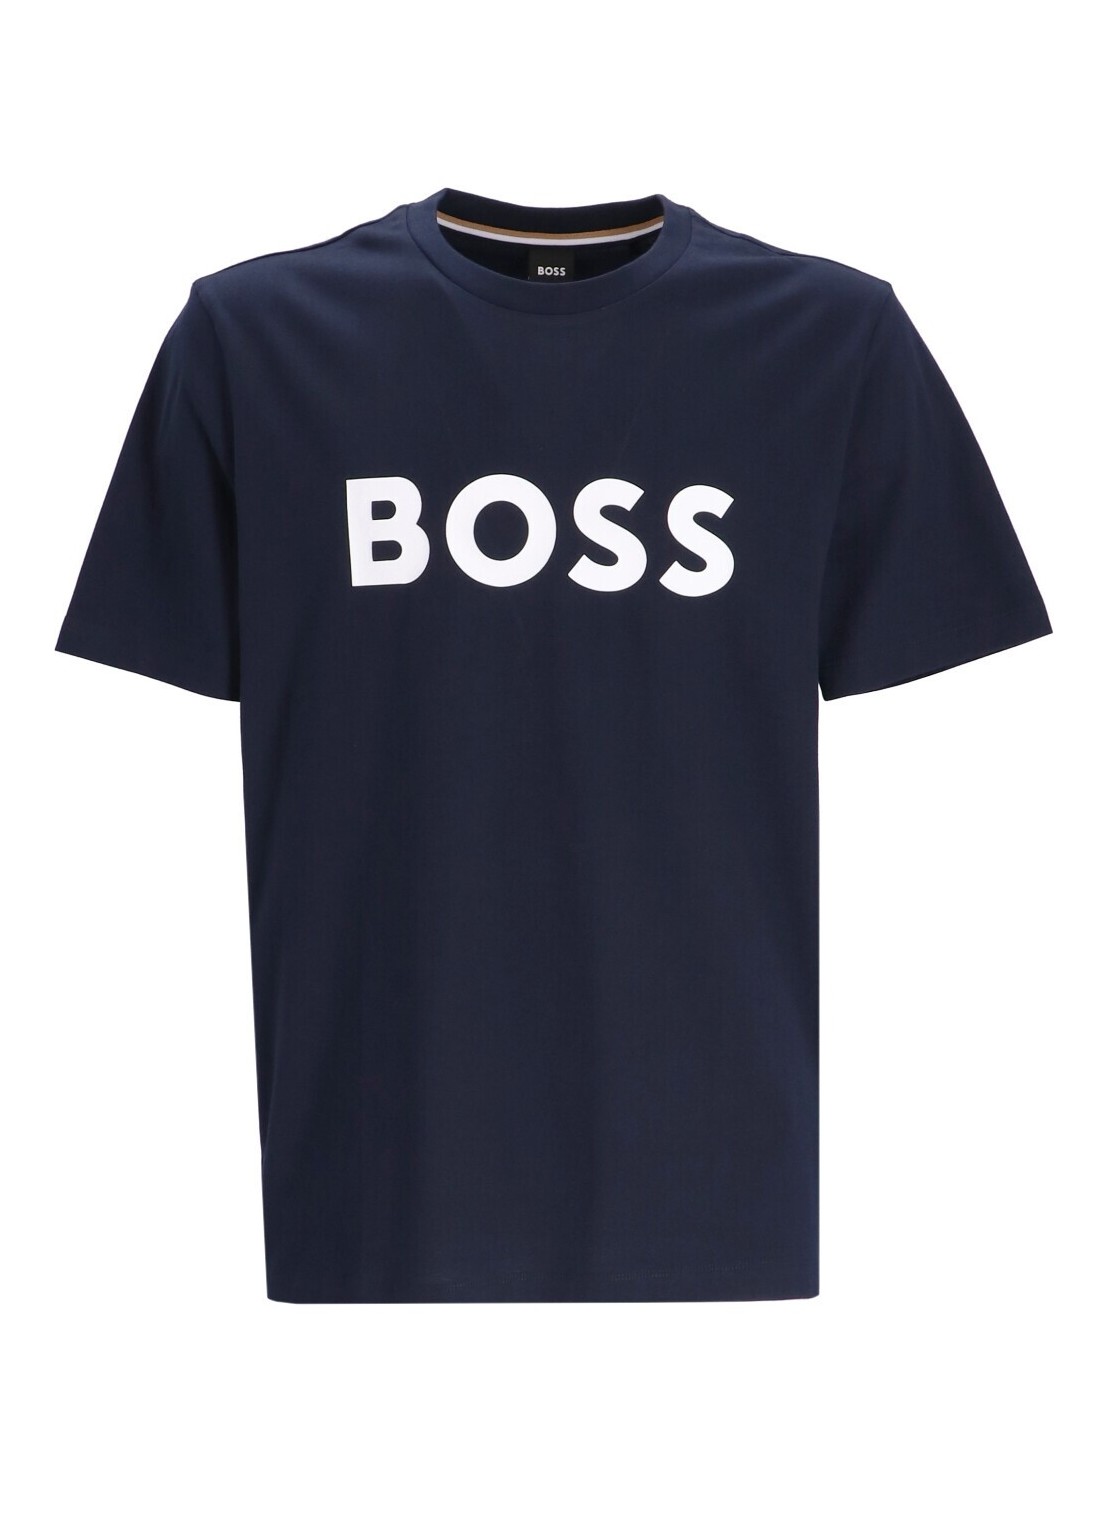 Camiseta boss t-shirt man tiburt 354 50495742 404 talla XL
 